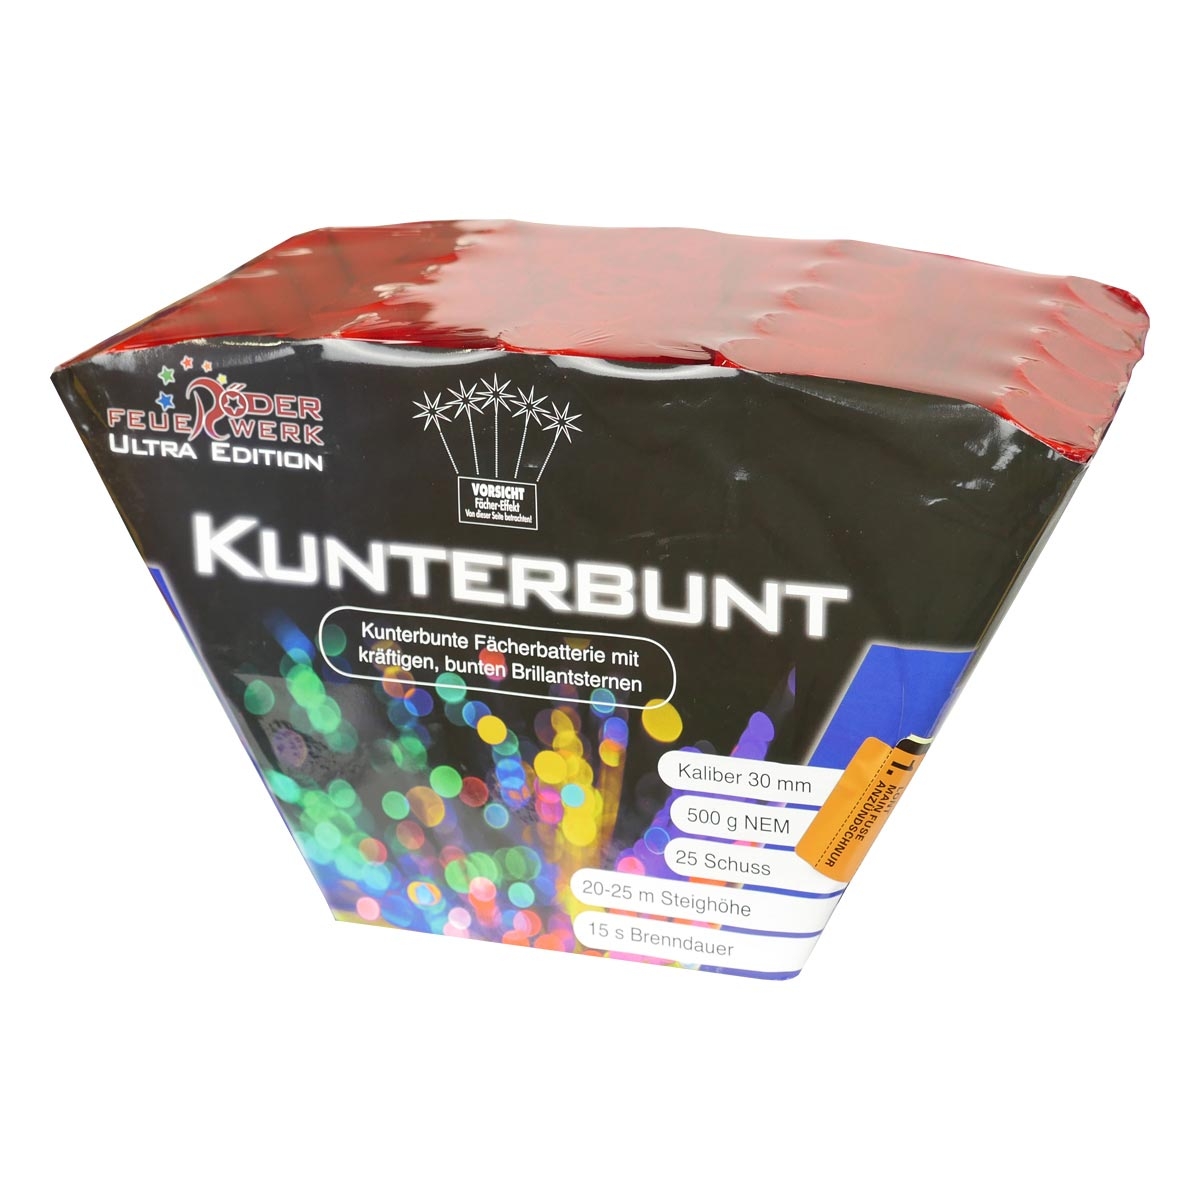 kunterbunt-multicolor-feuerwerksbatterie_600x600@2x.jpg